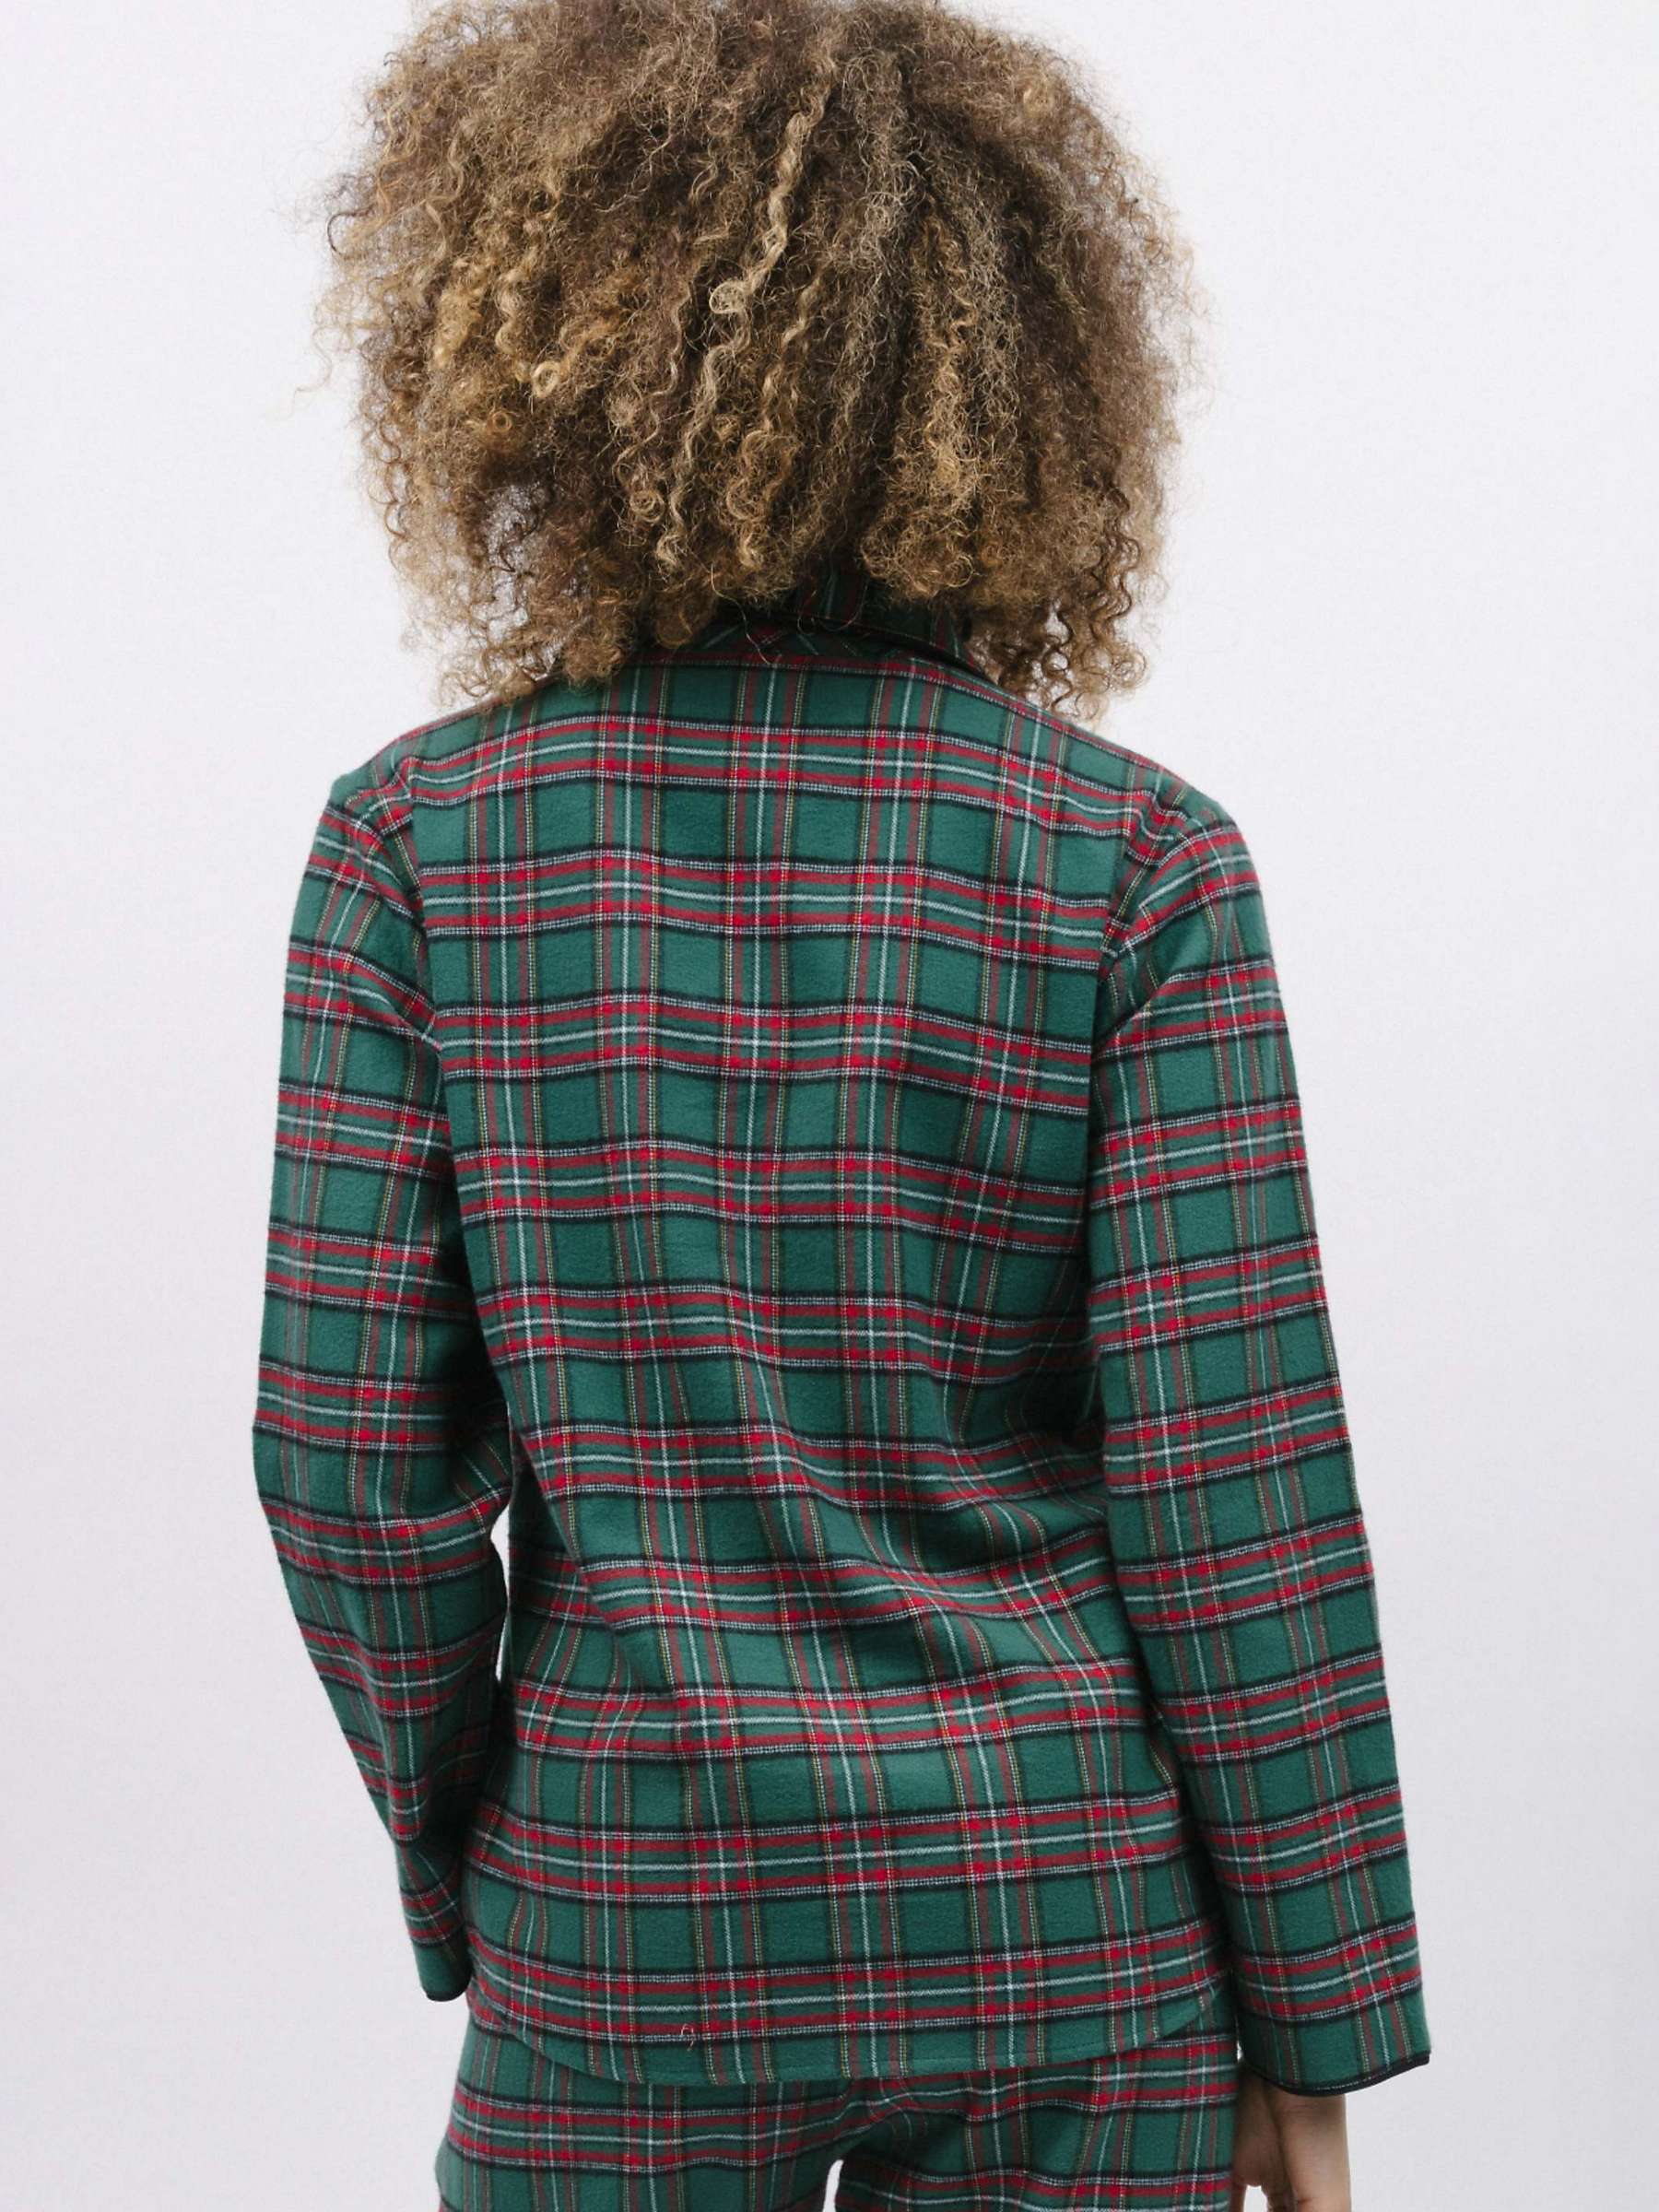 Buy Cyberjammies Whistler Check Pyjama Top, Dark Green/Red Online at johnlewis.com